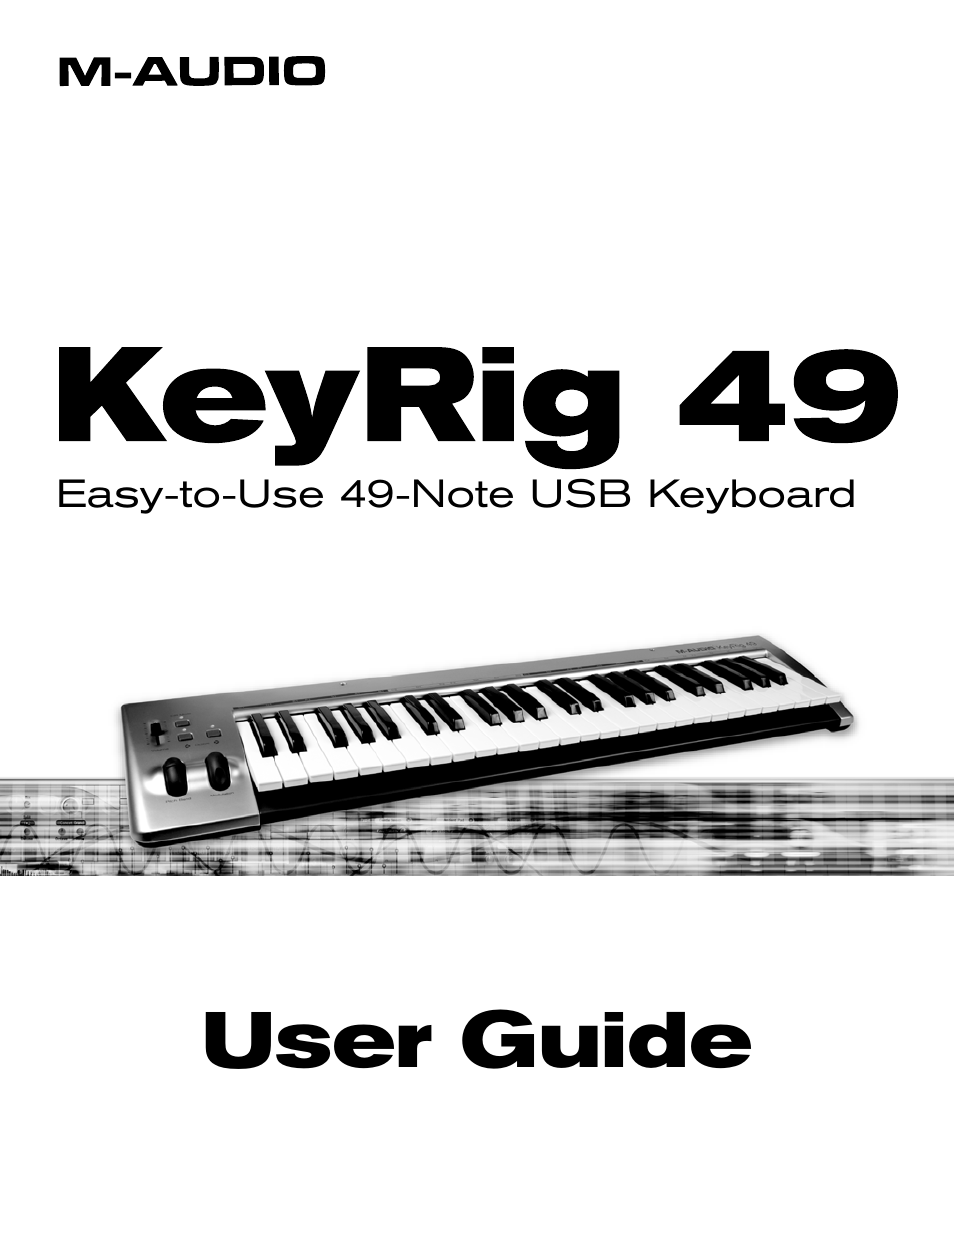 m-audio keyrig 49 software download